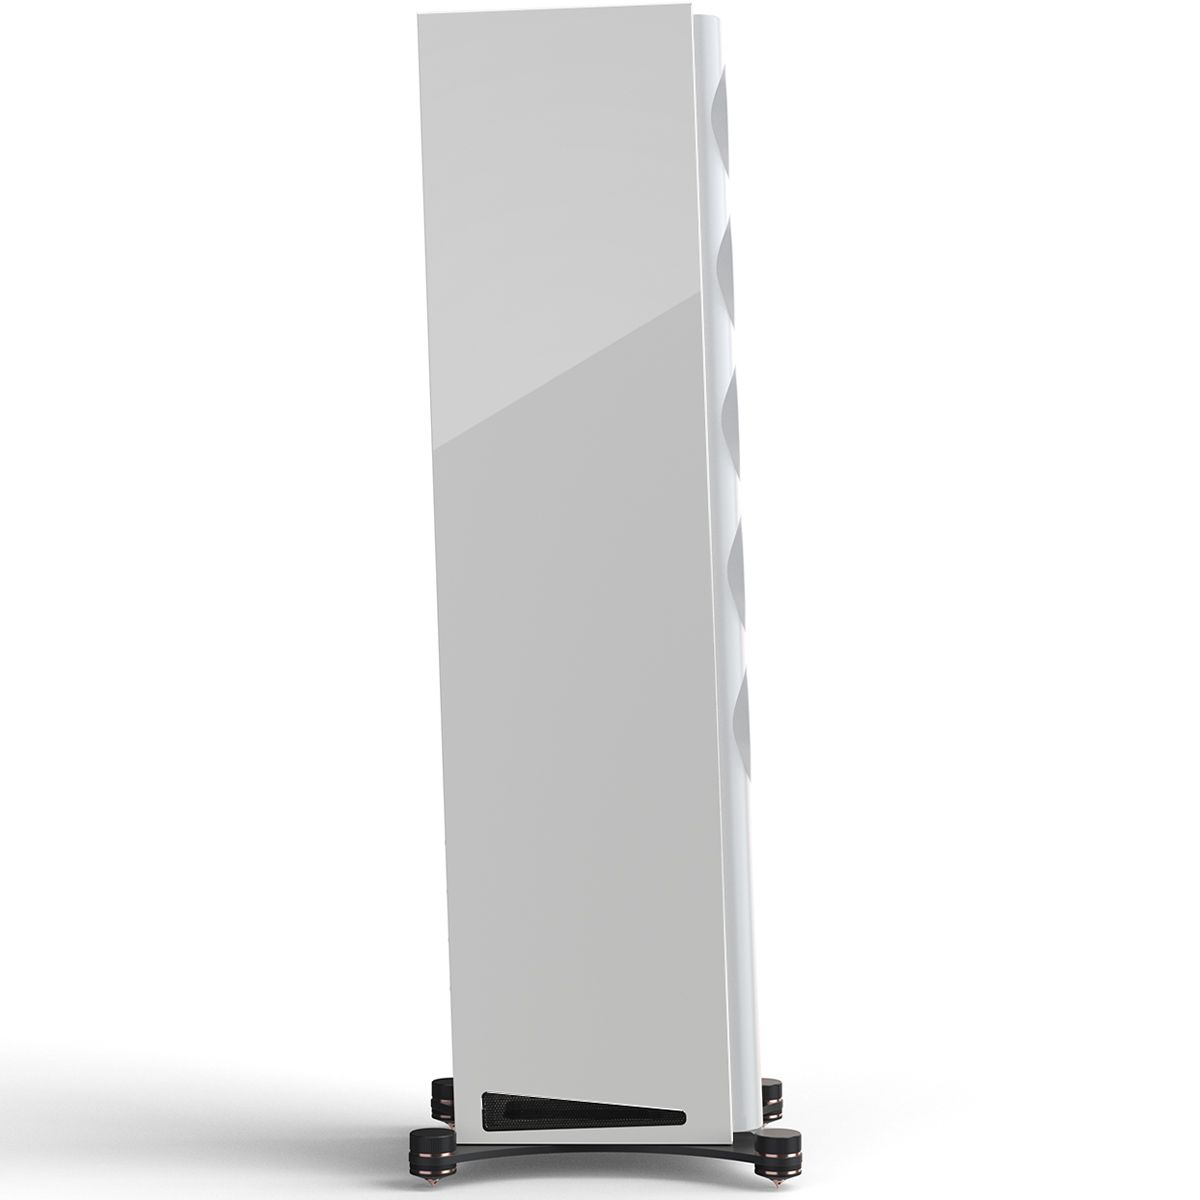 Perlisten R7t Floorstanding Speaker Side Angle View In White